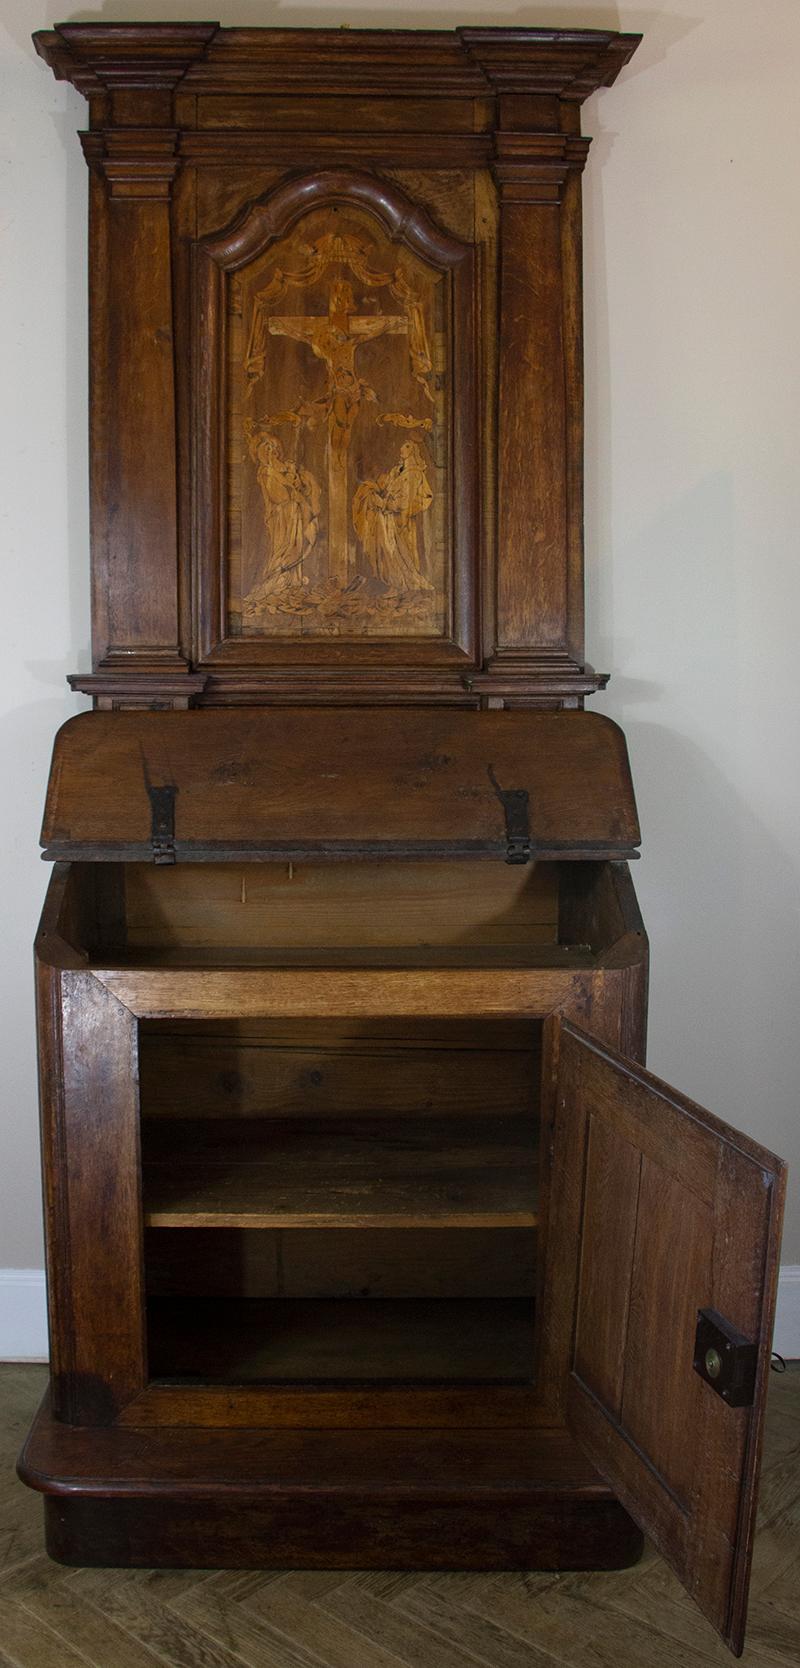 Wunderschönes Oratorium aus Eichenholz aus der Zeit Ludwigs XIV. Der untere Teil bildet ein Klapppult, hat eine Tür mit den ursprünglichen Scharnieren und ruht auf einem Podest. Im oberen Teil besteht der Giebel aus einer außergewöhnlichen